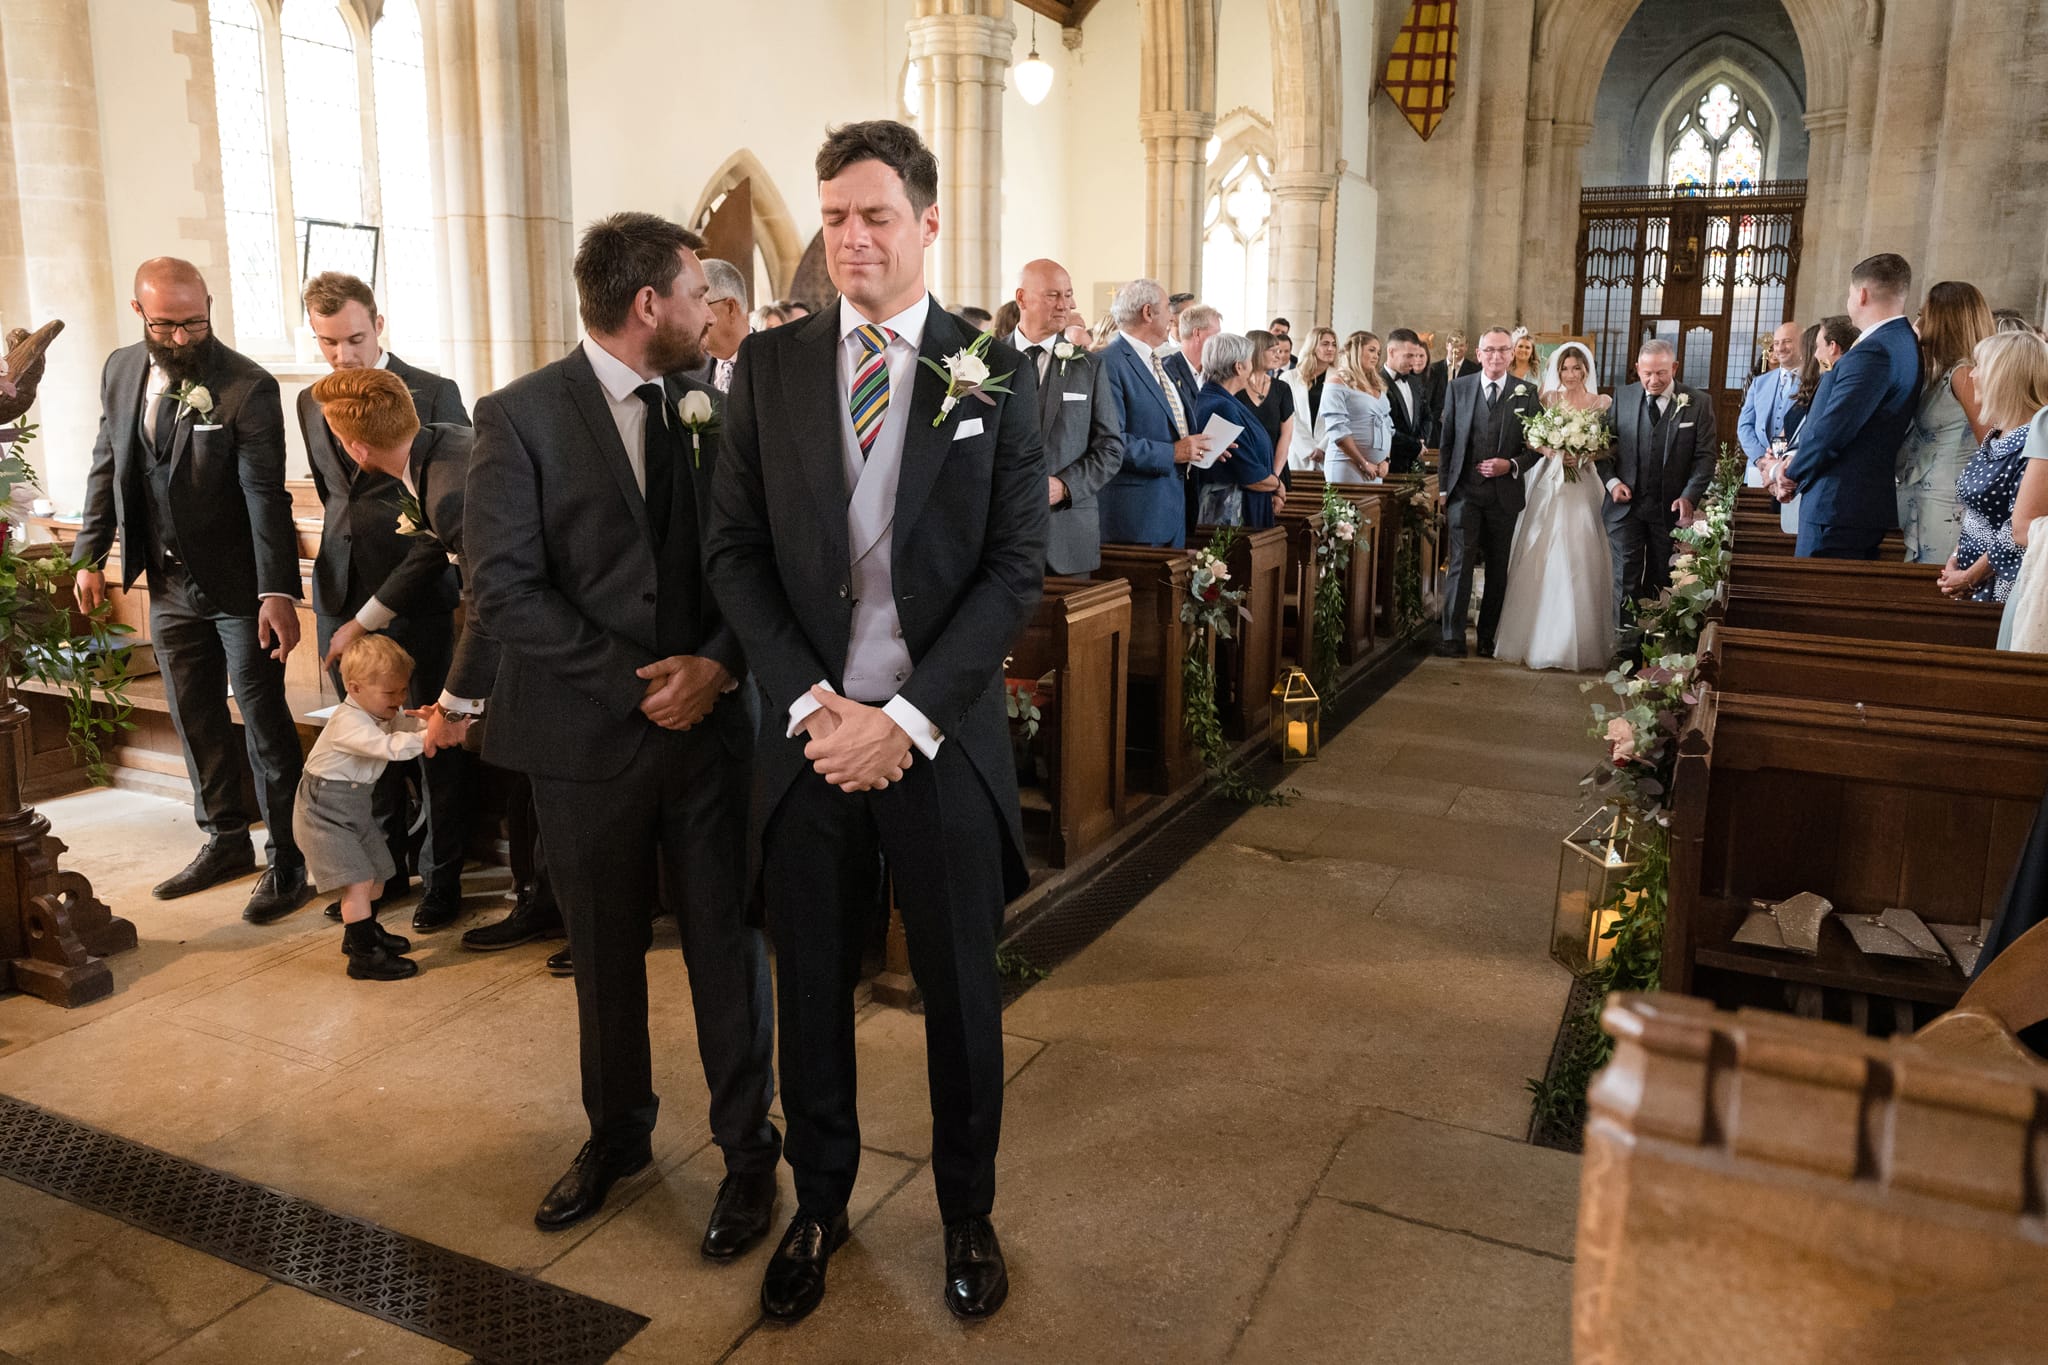 Groom looking emotional as bride walks down aisle